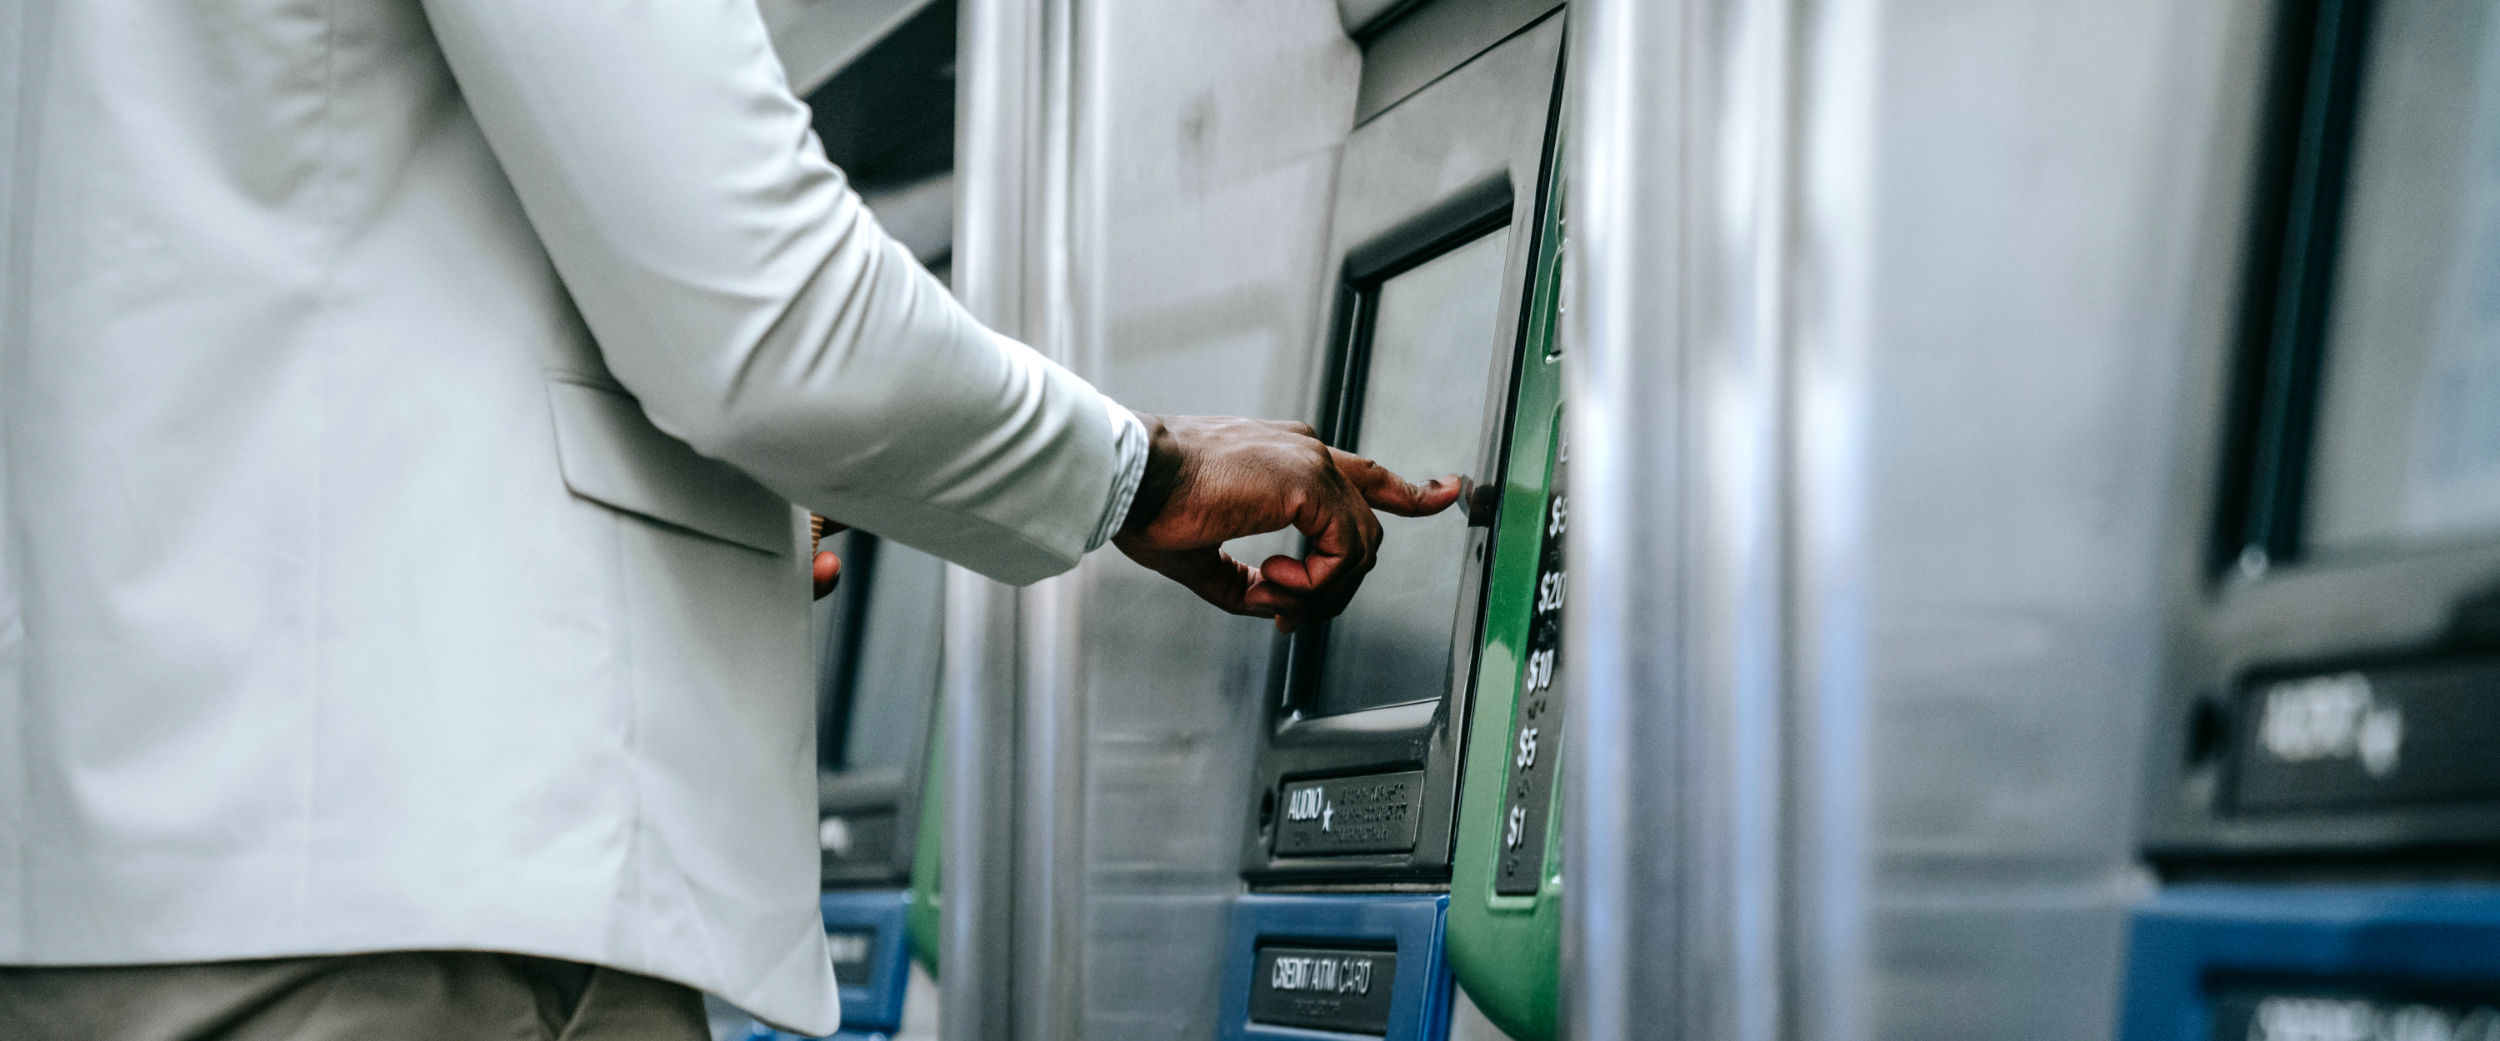 Ein Mann drückt auf den Bildschirm eines Ticketautomaten mit seinem Finger.